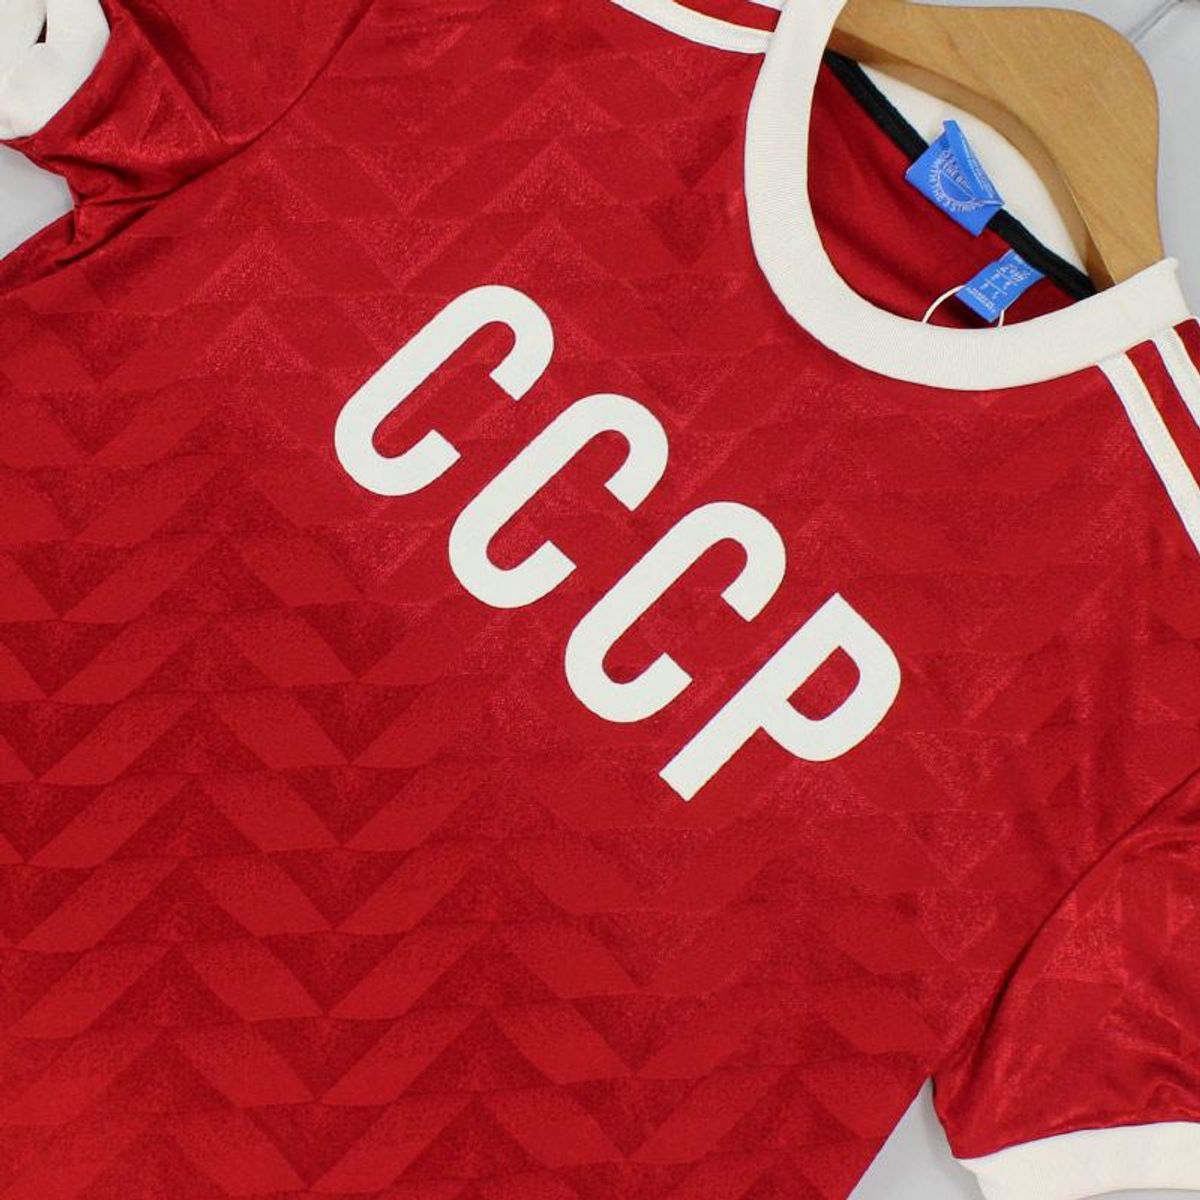 Camisa Adidas Originals União Soviética Cccp Original Versão Comemorativa | Camisa Masculina Adidas Usado 59607147 |